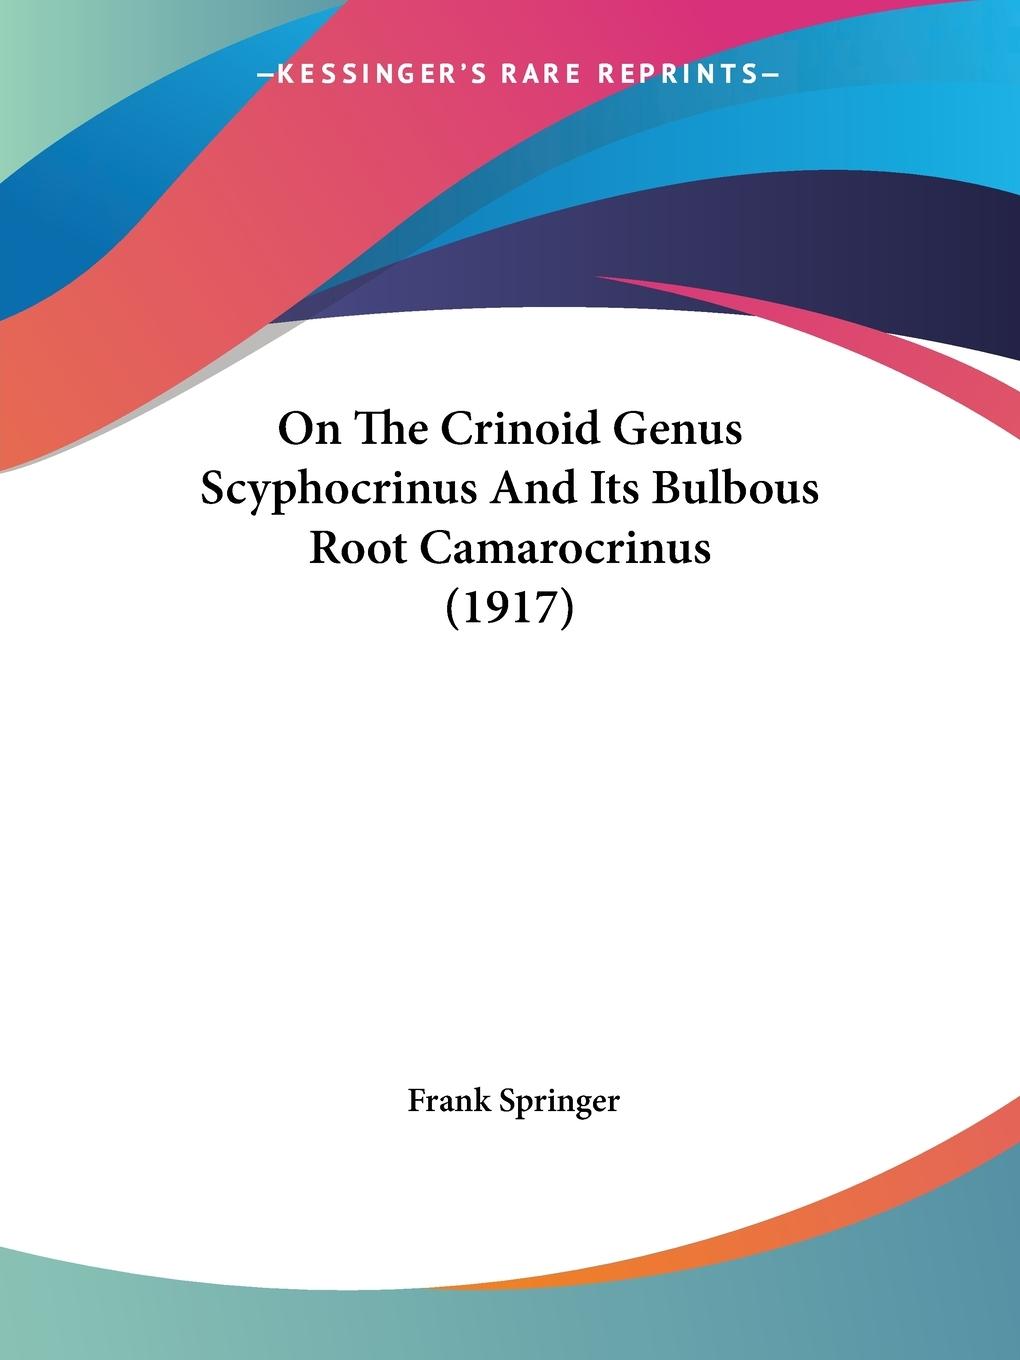 On The Crinoid Genus Scyphocrinus And Its Bulbous Root Camarocrinus (1917) - Springer, Frank